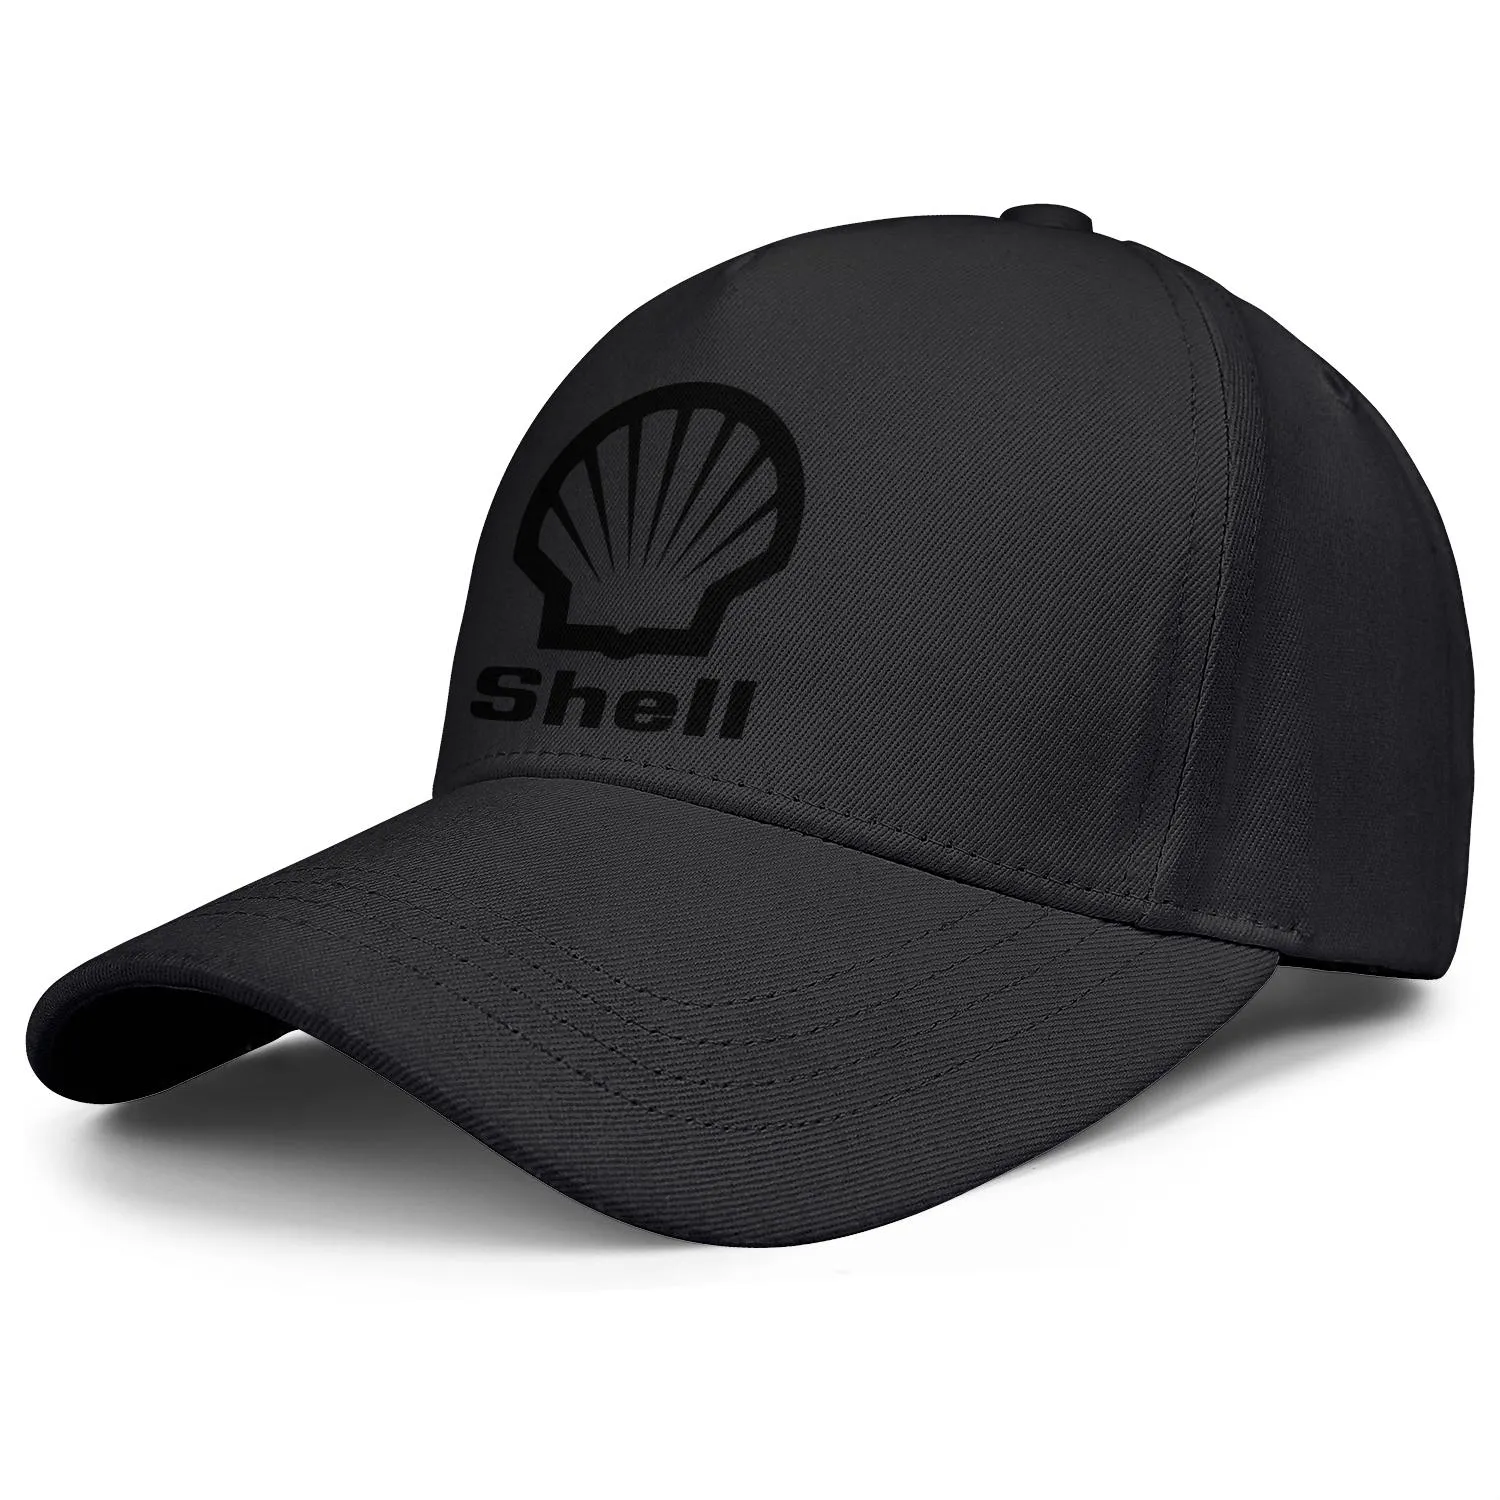 Shell essence station-service logo hommes et femmes casquette de camionneur réglable équipée vintage mignon baseballhats localisateur essence symbo4496249